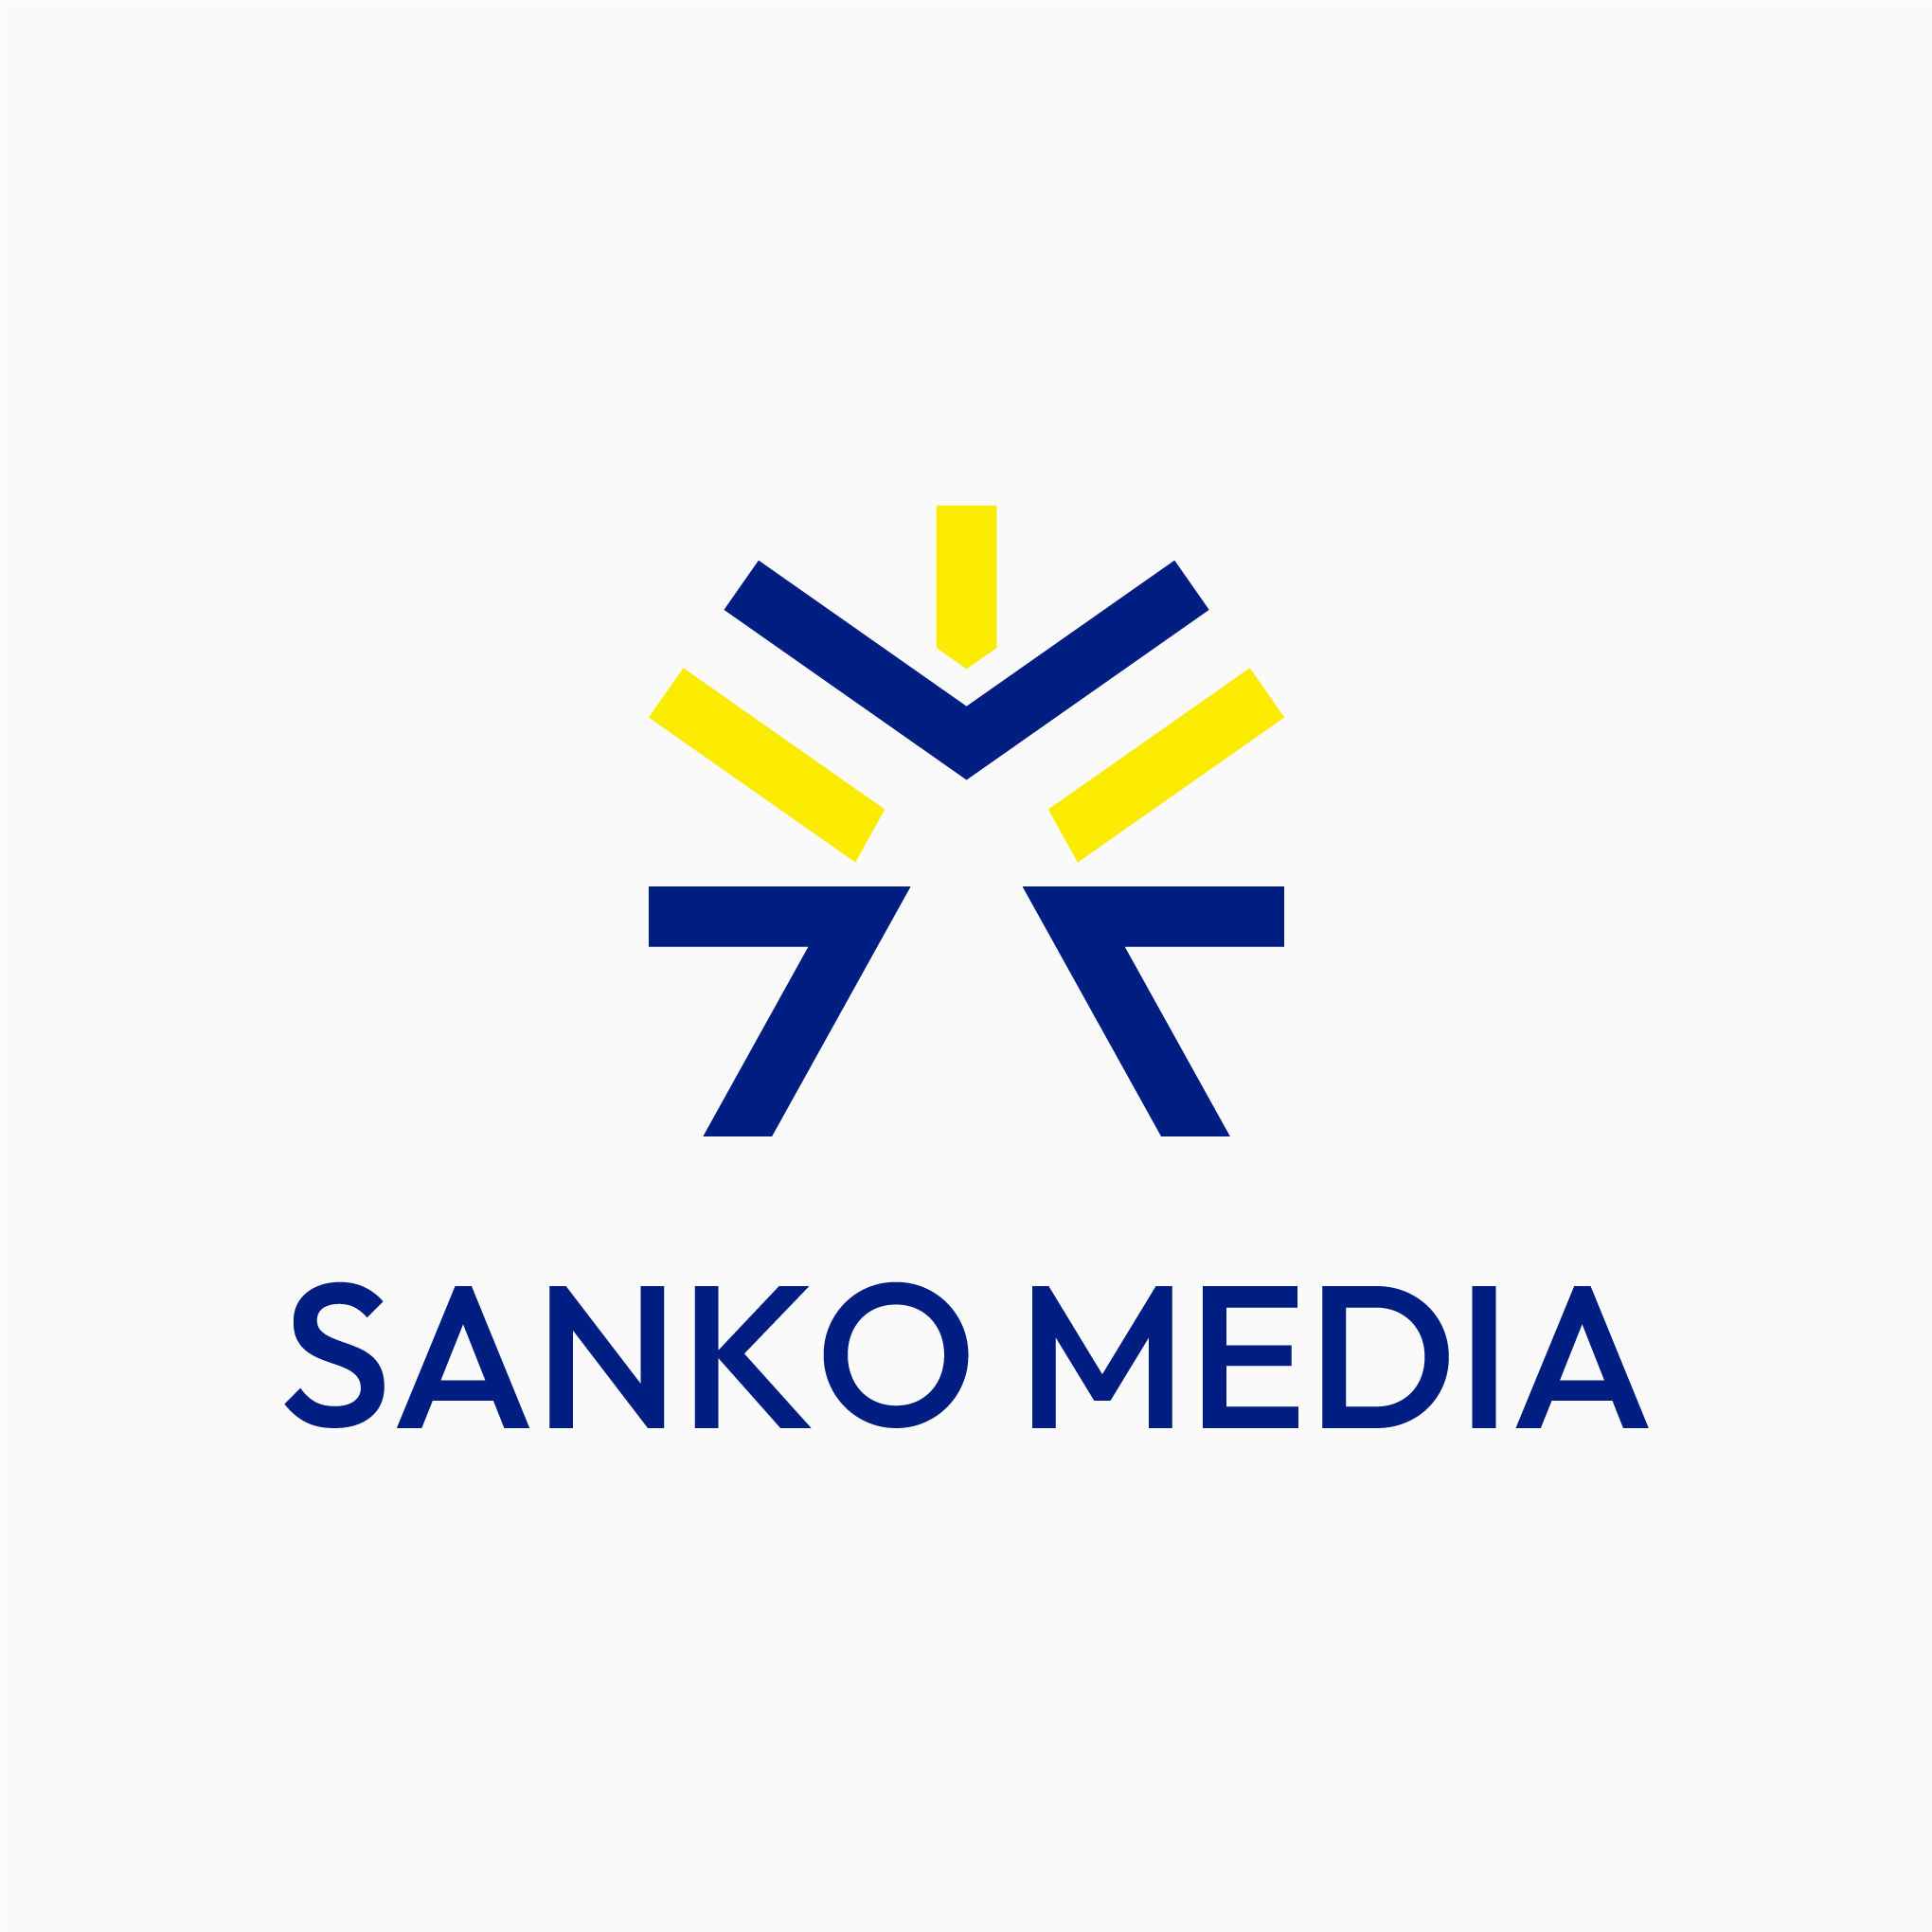 SANKO MEDIA